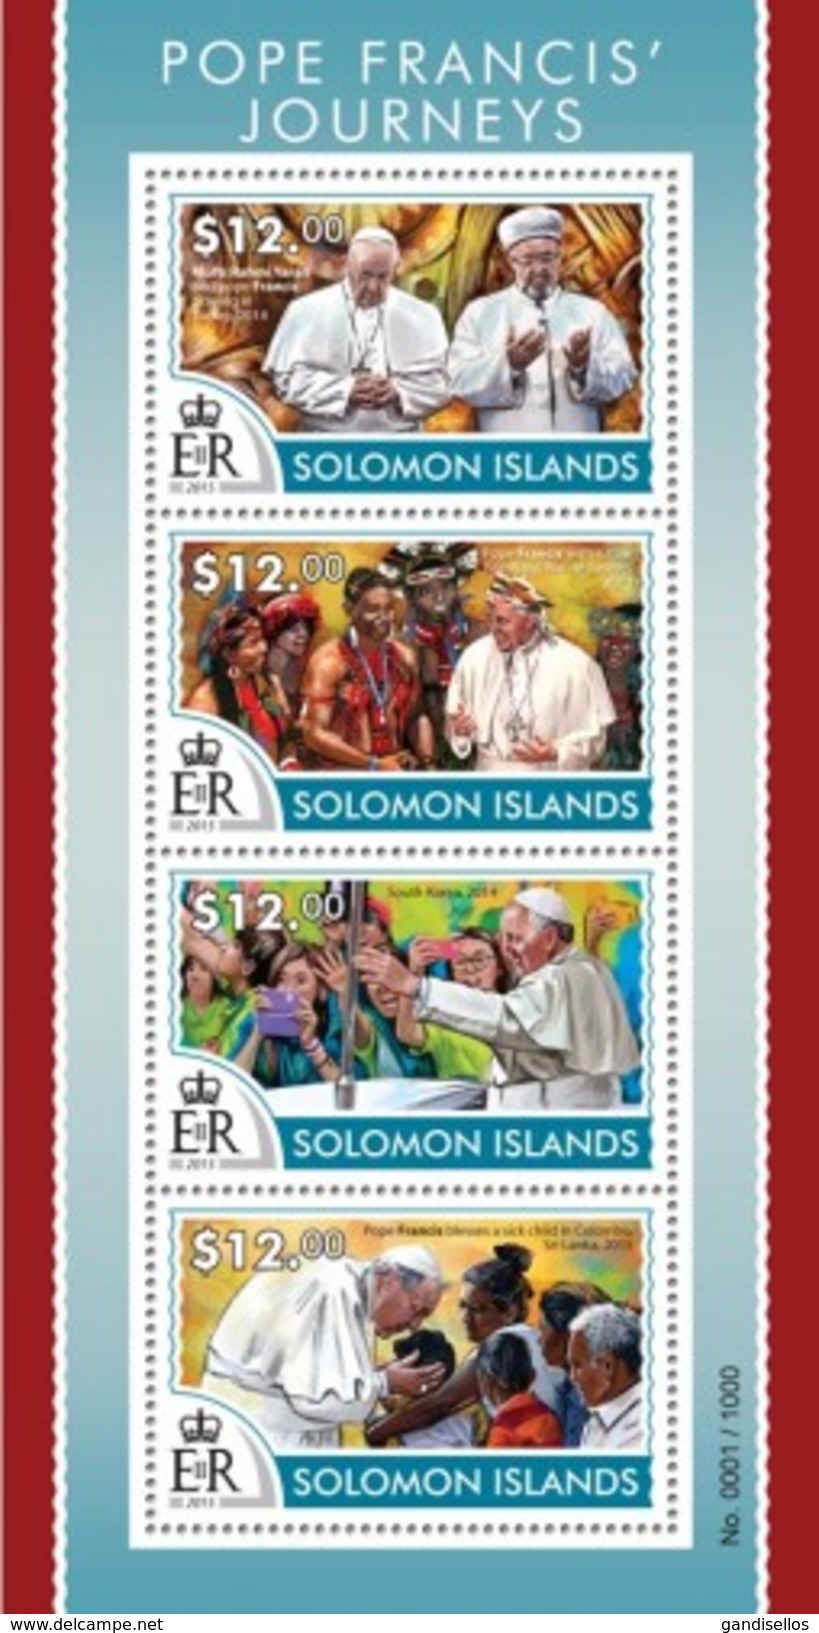 SOLOMON ISLANDS 2015 SHEET PAPE FRANÇOIS PAPA FRANCISCO POPE FRANCIS POPES PAPES PAPAS RELIGION Slm15312a - Solomon Islands (1978-...)